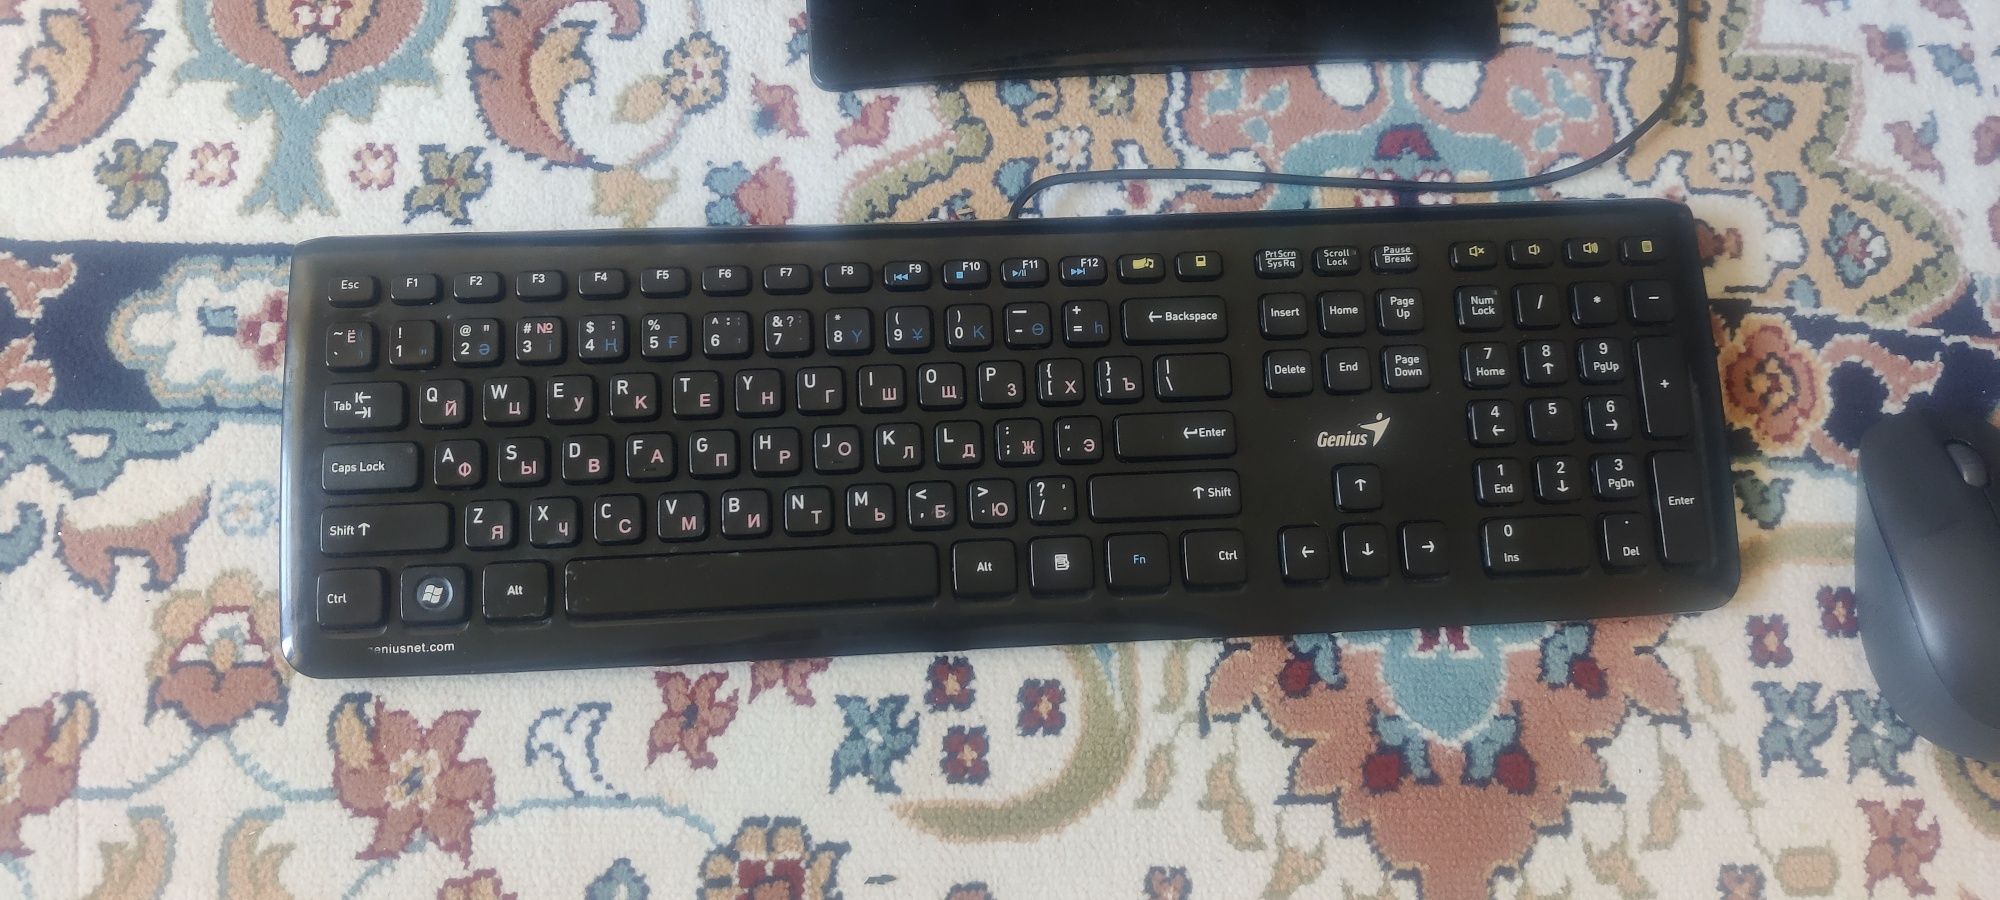 Компьютер, клавиатура, мышка, монитор (комплект)